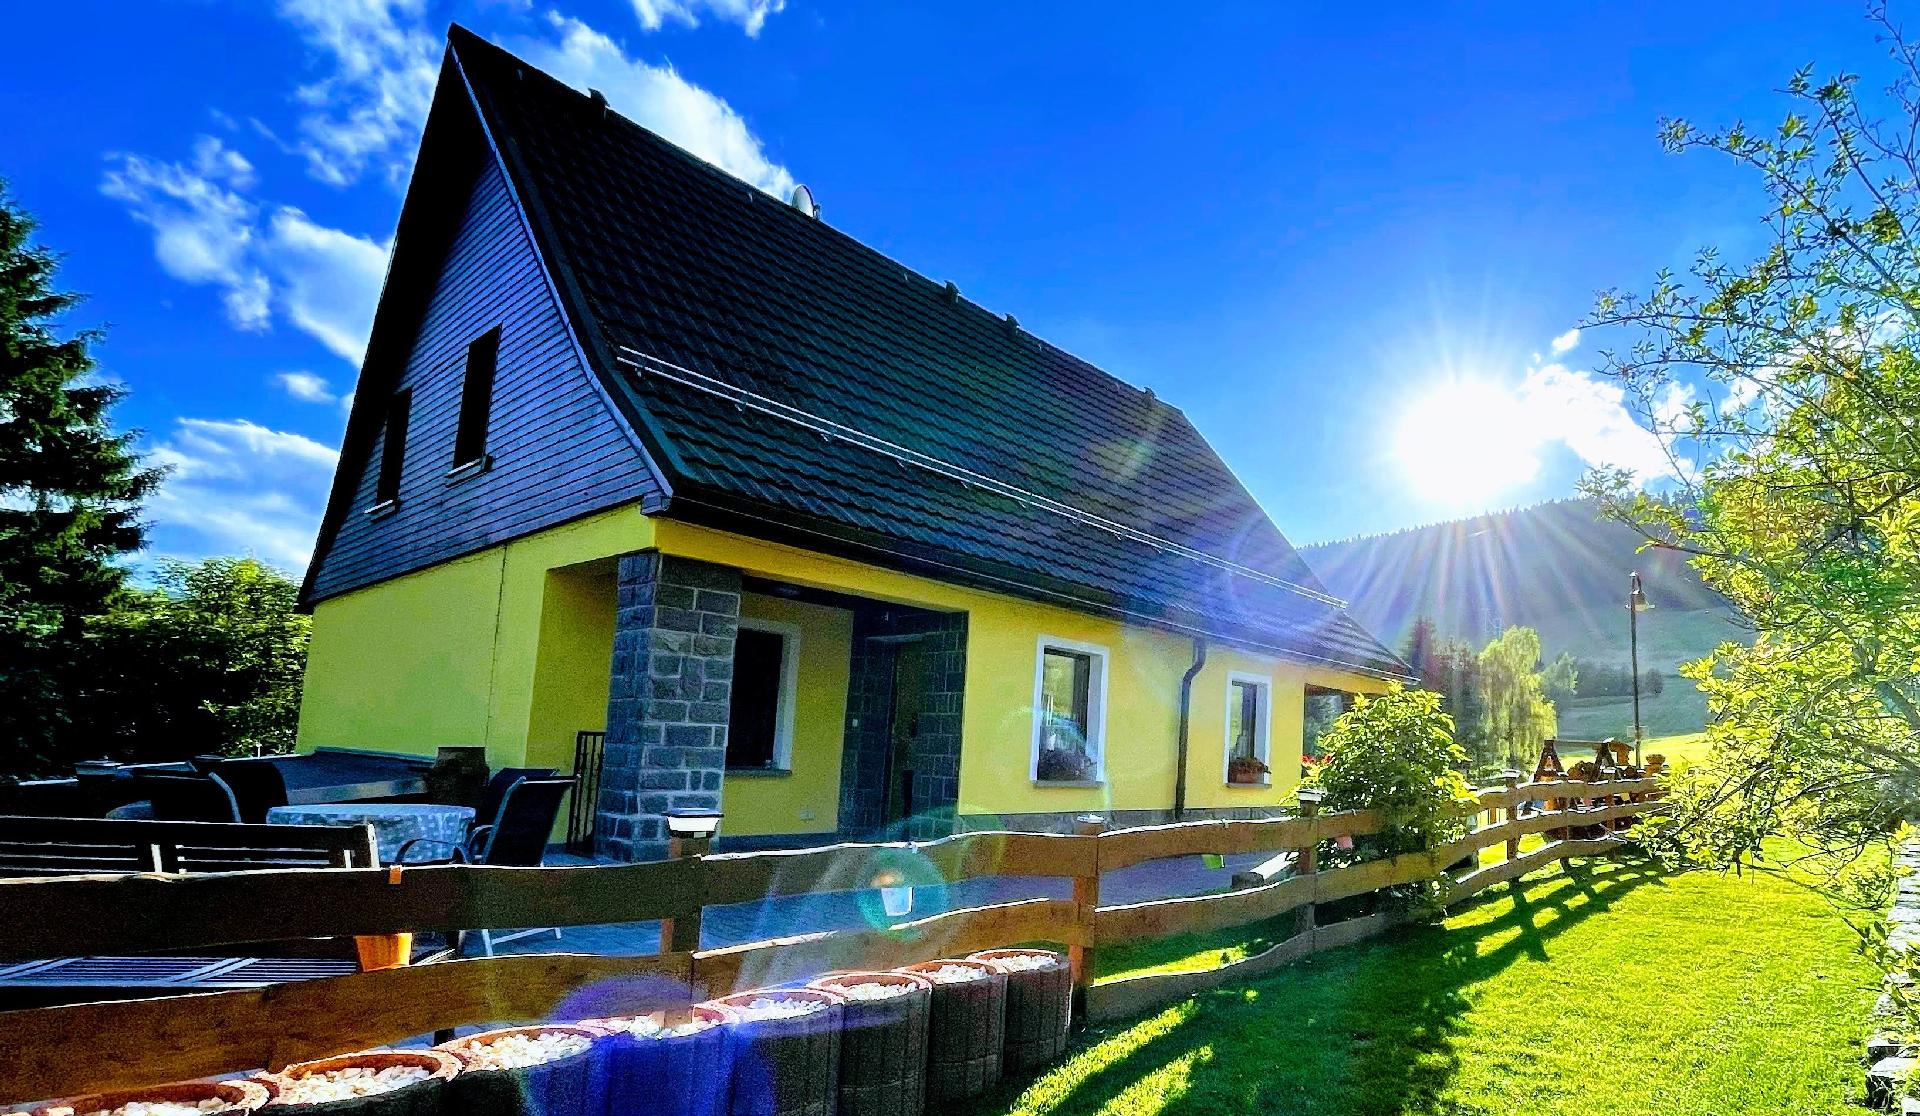 Tolles Ferienhaus in Kurort Oberwiesenthal mit Gar   Erzgebirge